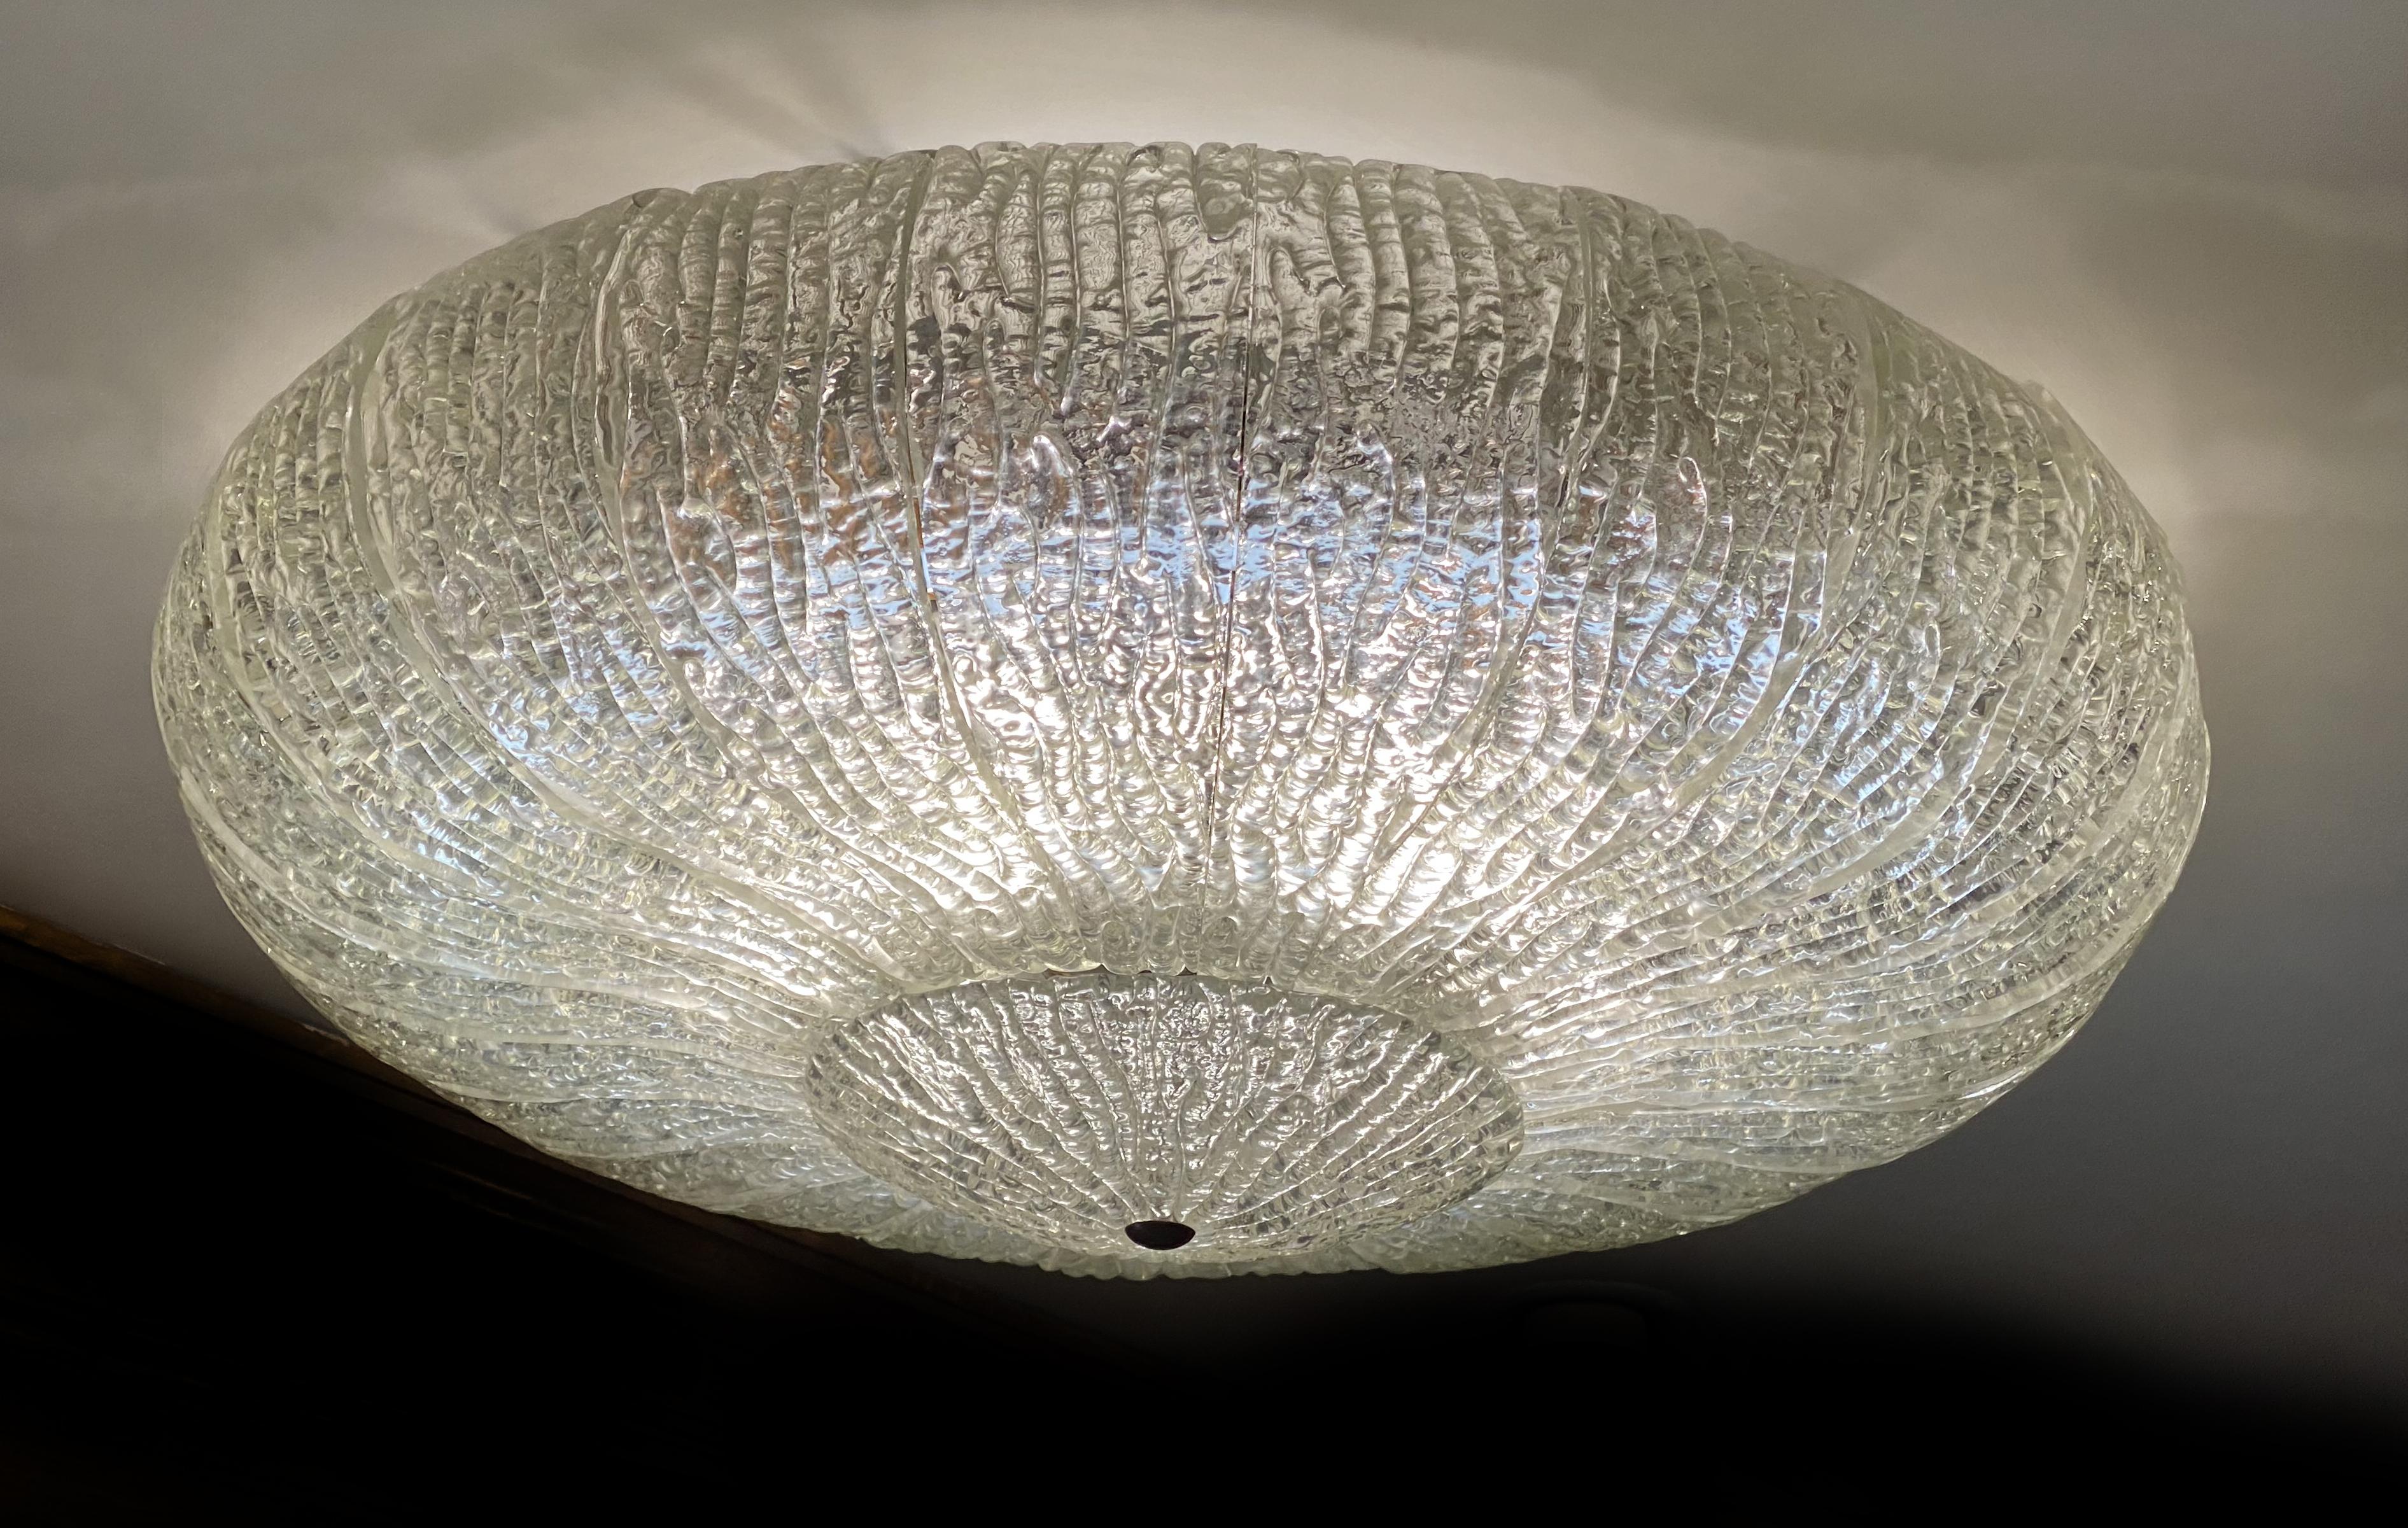 Fantastique et originale paire de plafonniers en verre d'art Barovier&Toso Murano Italie. Cette lampe rare est composée de 26 panneaux de verre de glace soufflés à la bouche et formés de feuilles, ainsi que d'un énorme verre en guise de fond. Le